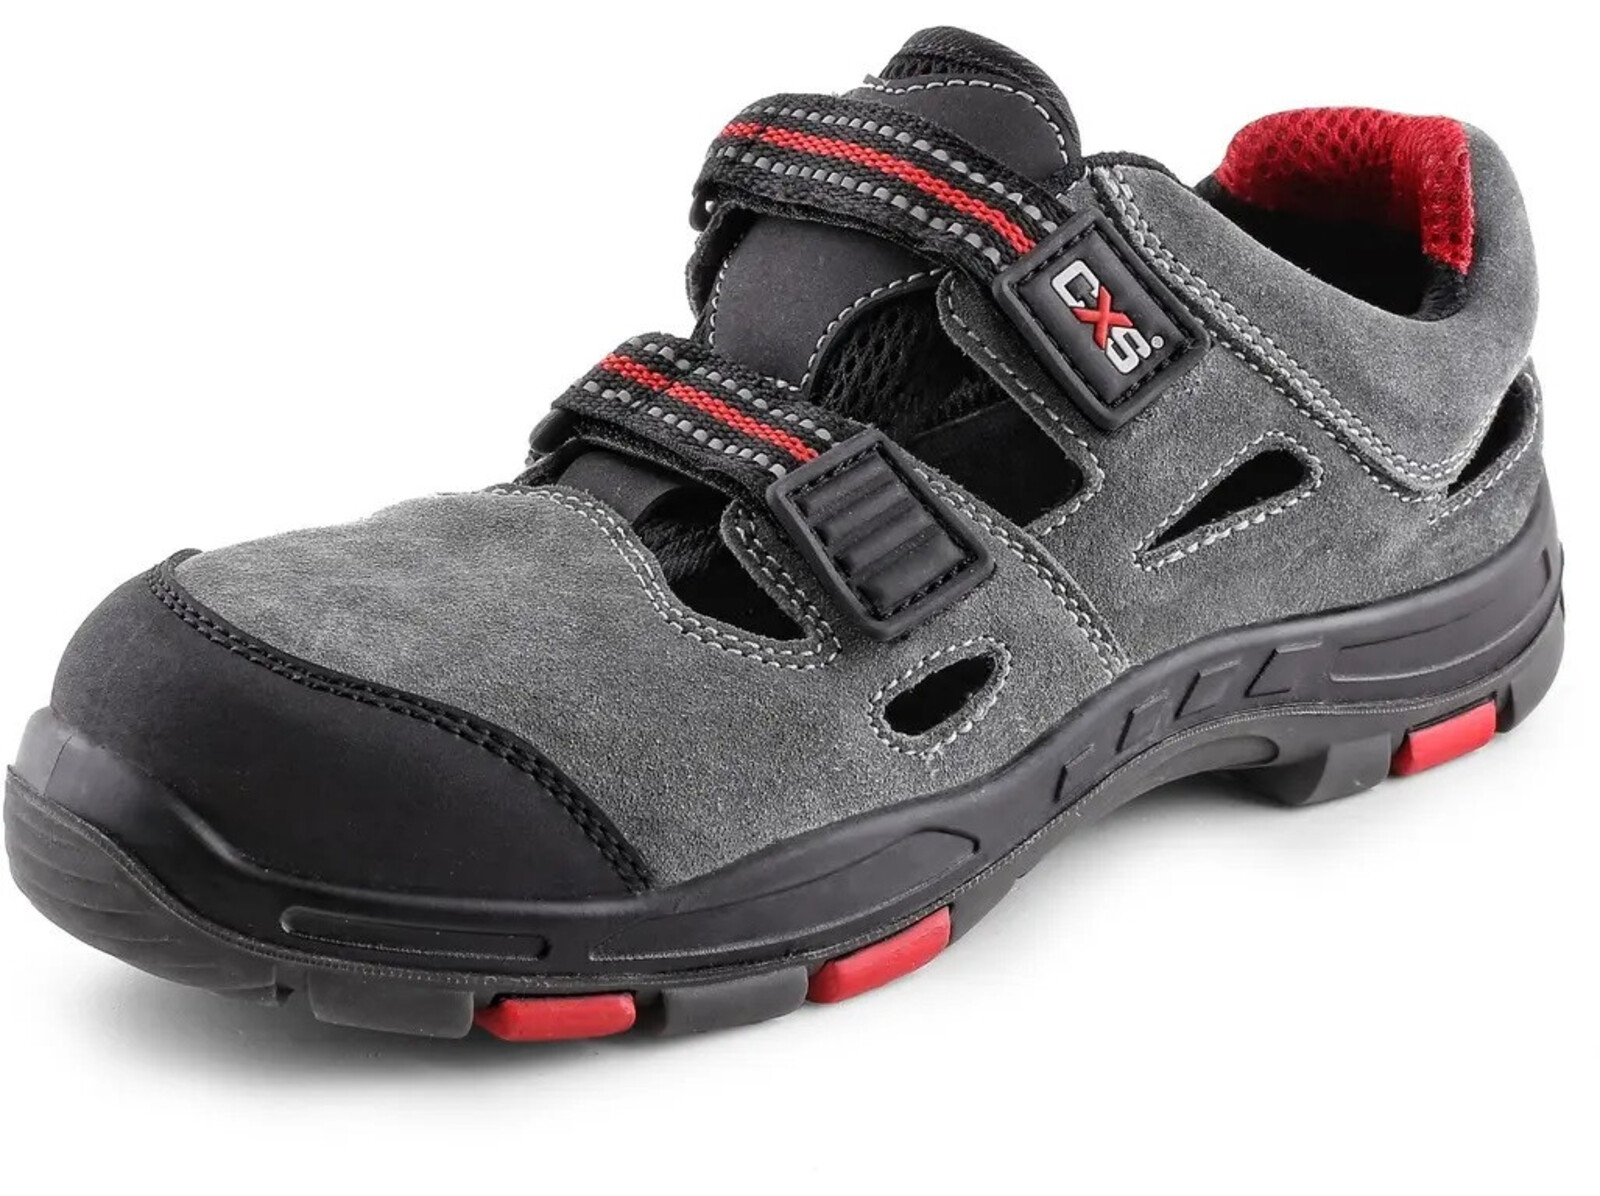 Bezpečnostné sandále CXS Rock Phyllite S1P SRA HRO MF - veľkosť: 42, farba: sivá/červená